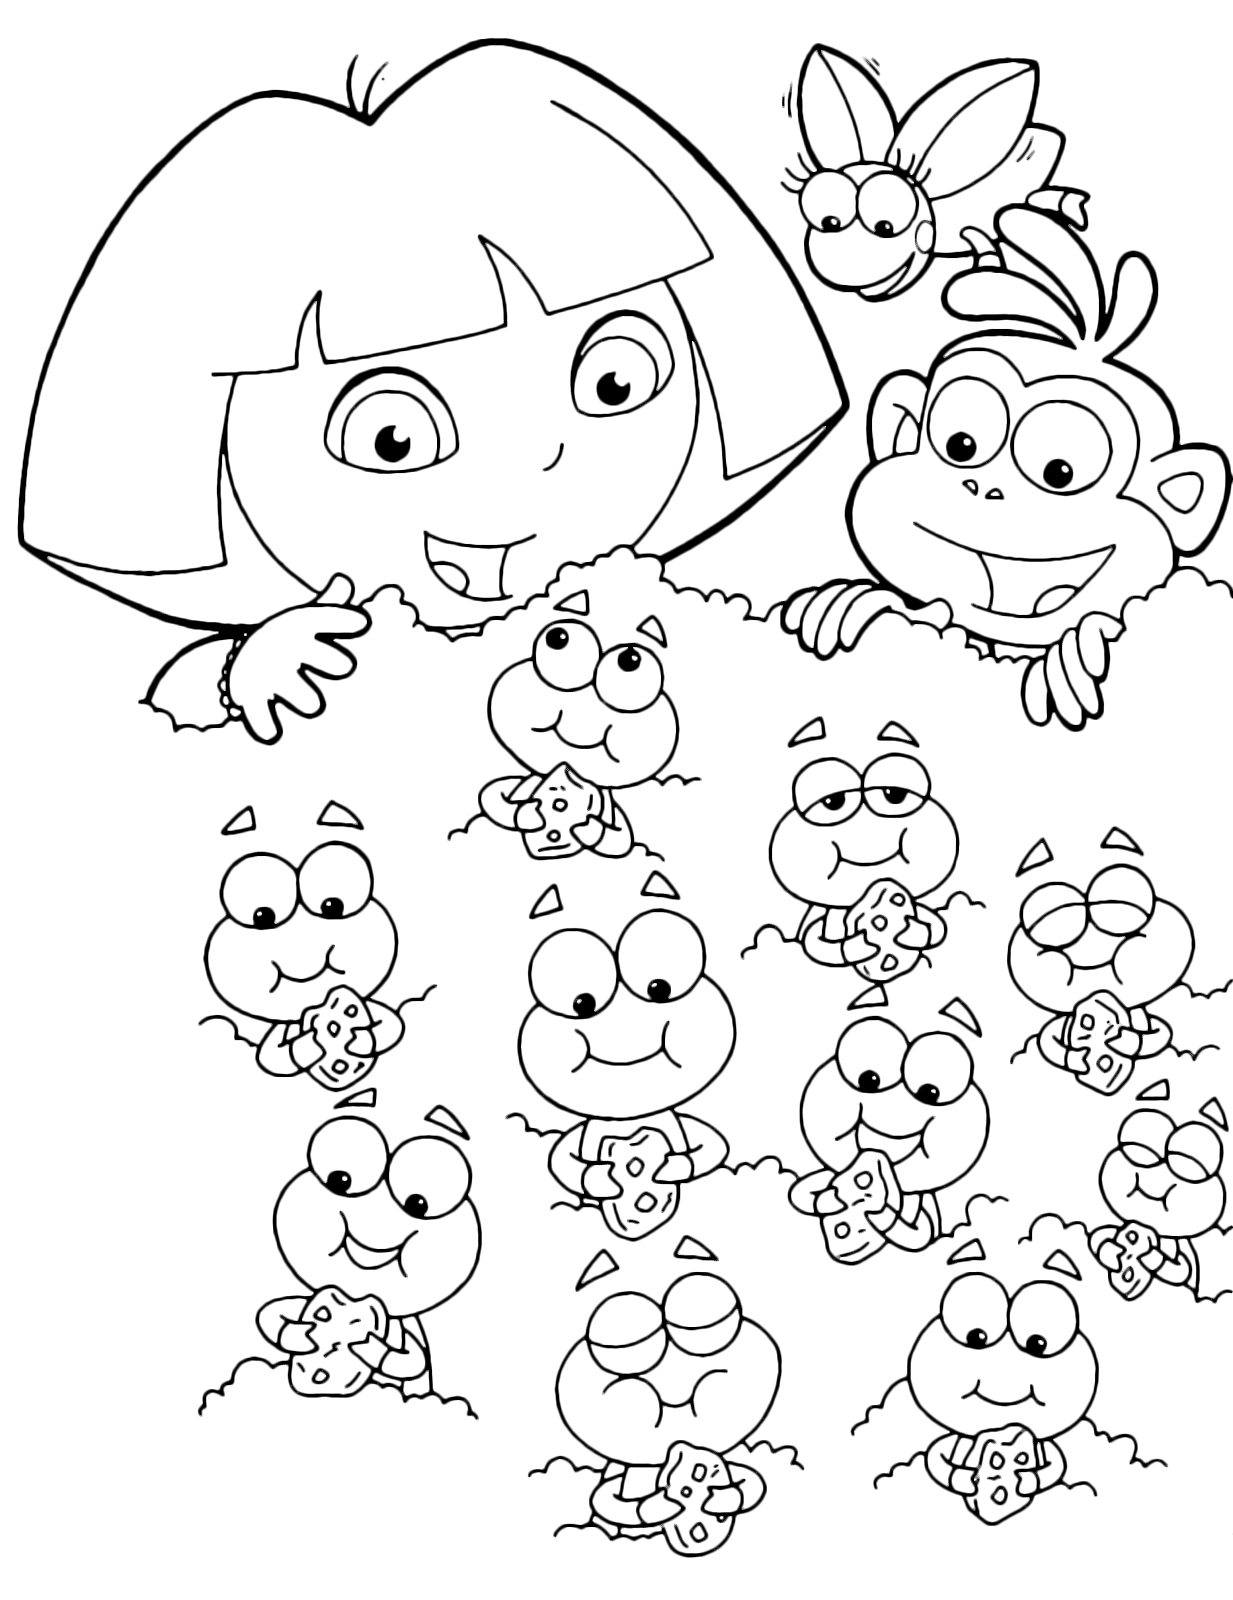 Dora l'esploratrice - Dora e Boots guardano i piccoli di coleottero che mangiano felici